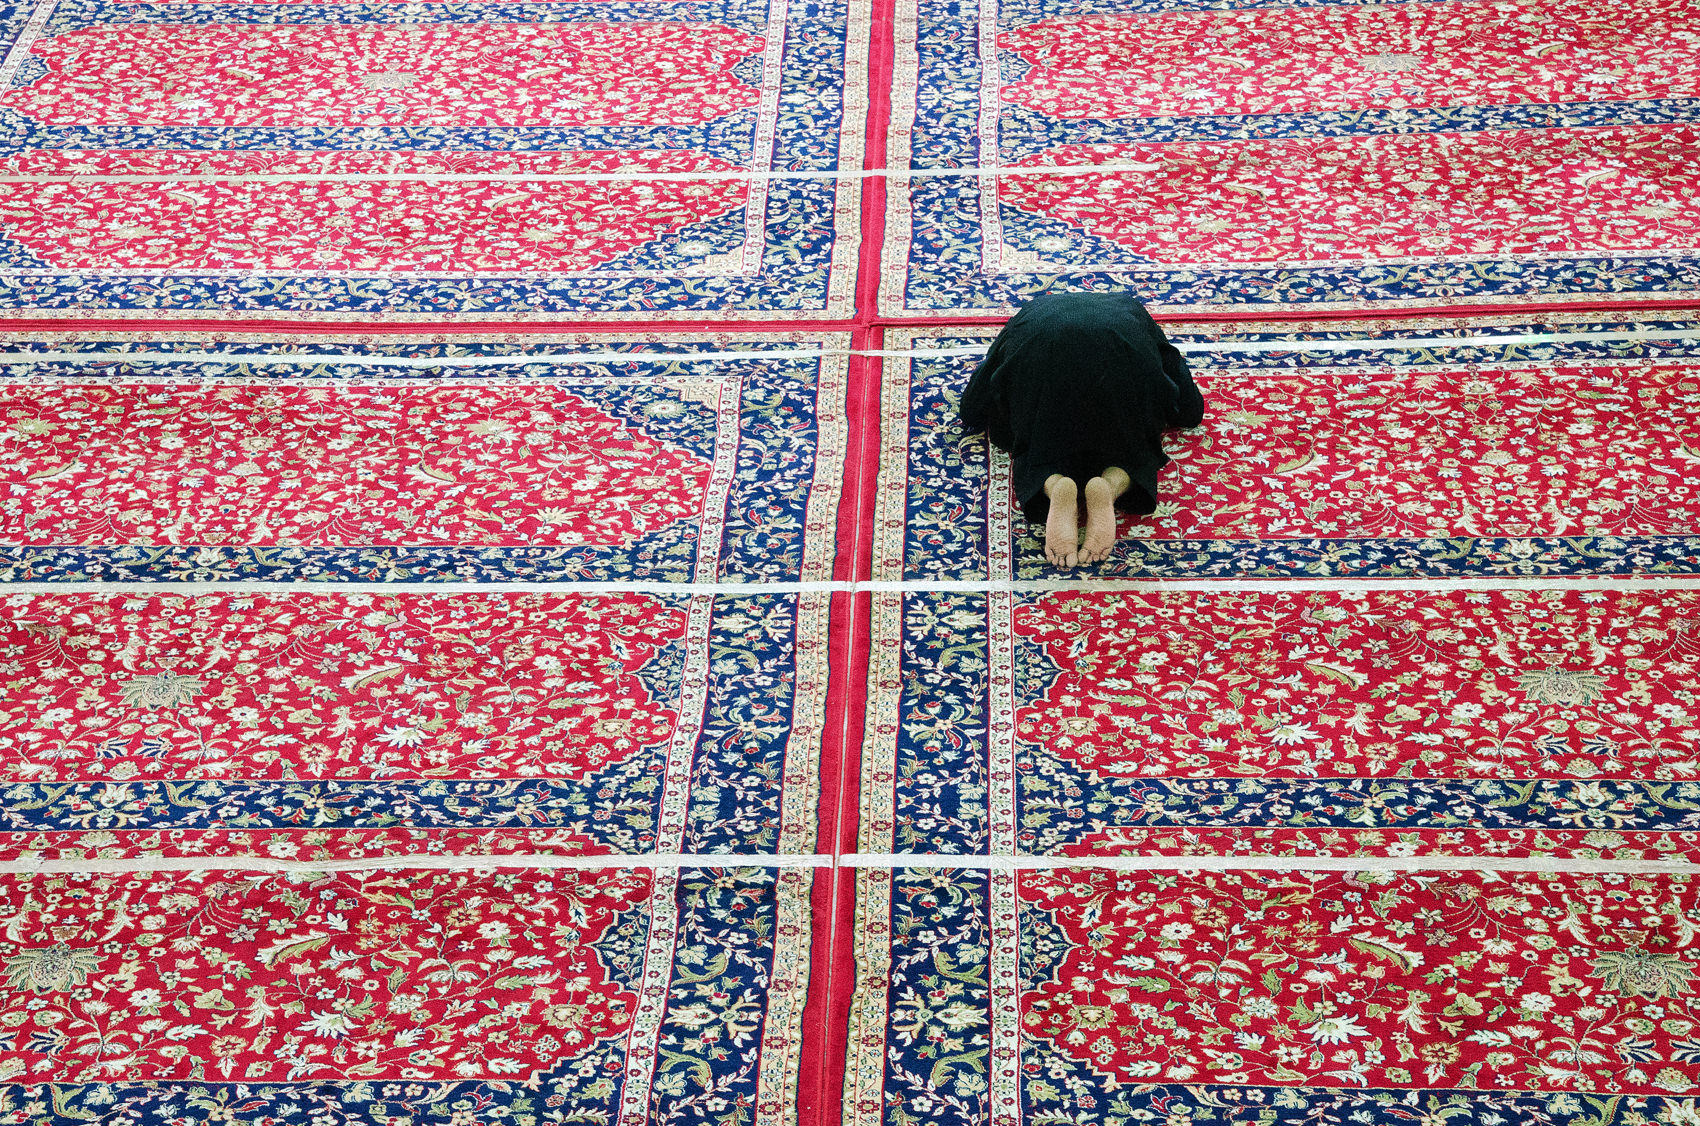 Islam. Muzułmanin w pokłonie. Srinagar, Indie 2017